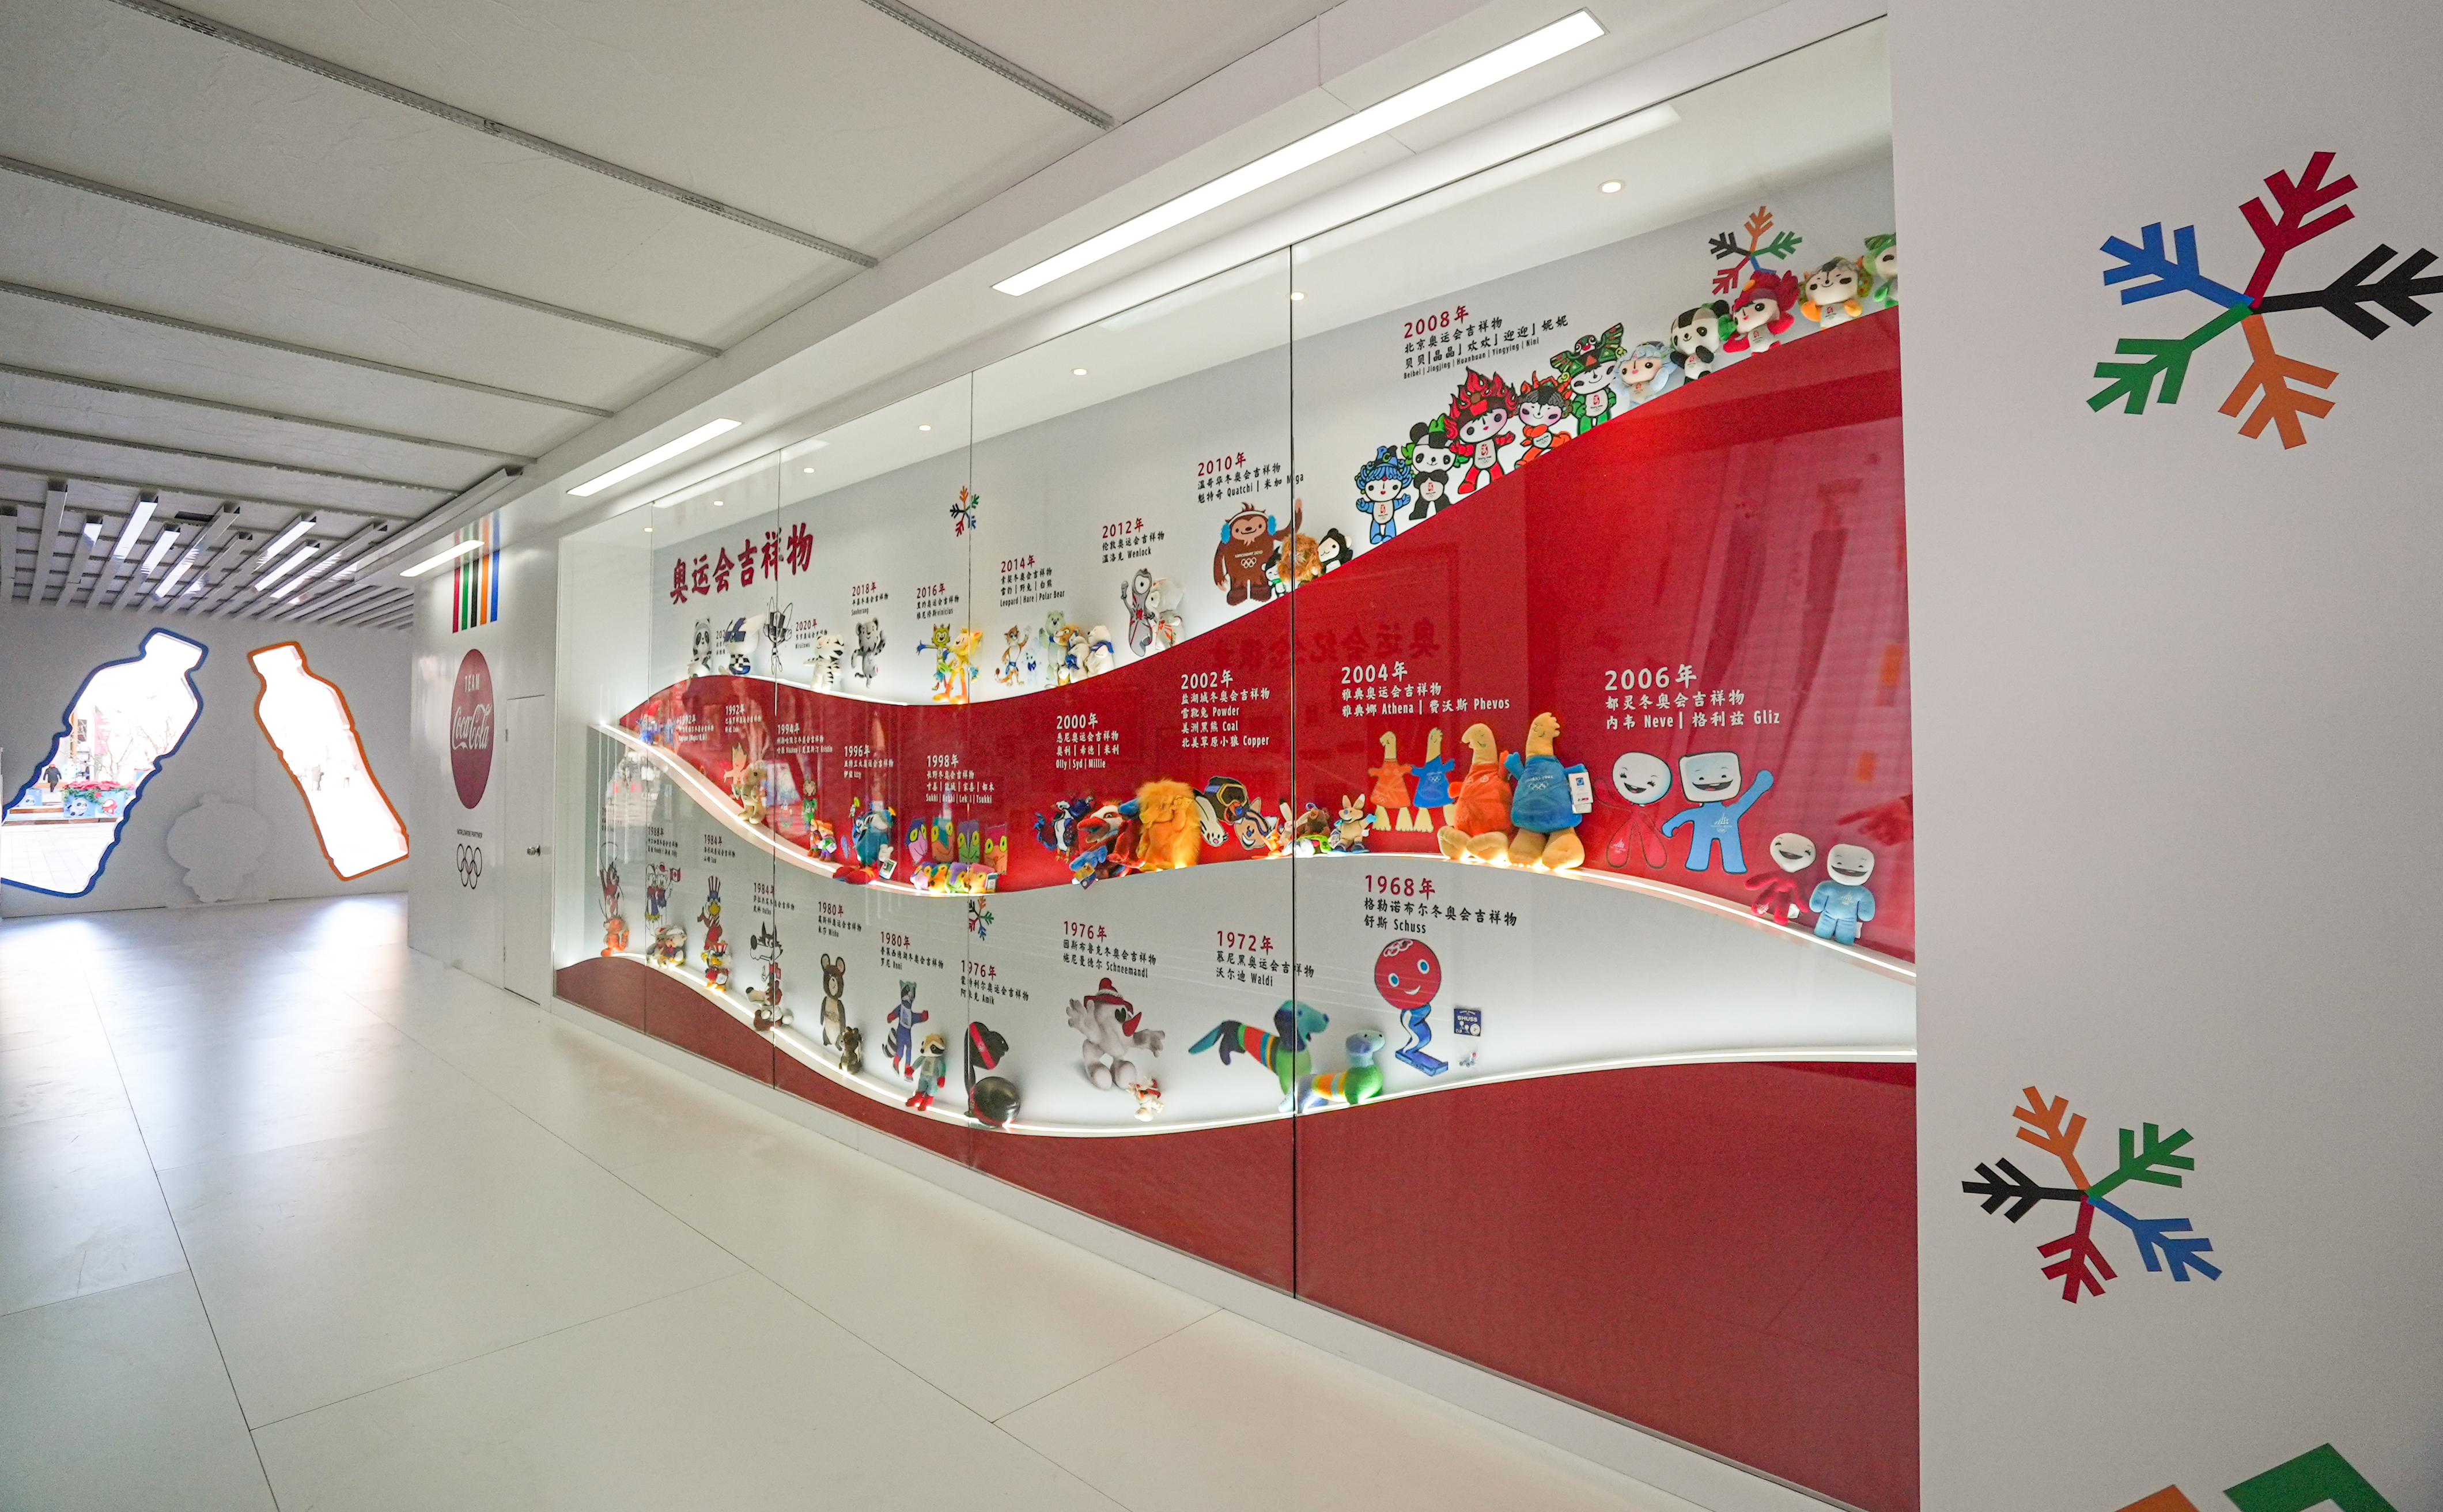 可口可乐中国“畅动冰雪迎冬奥”消费者互动活动带来了全系列奥运会吉祥物